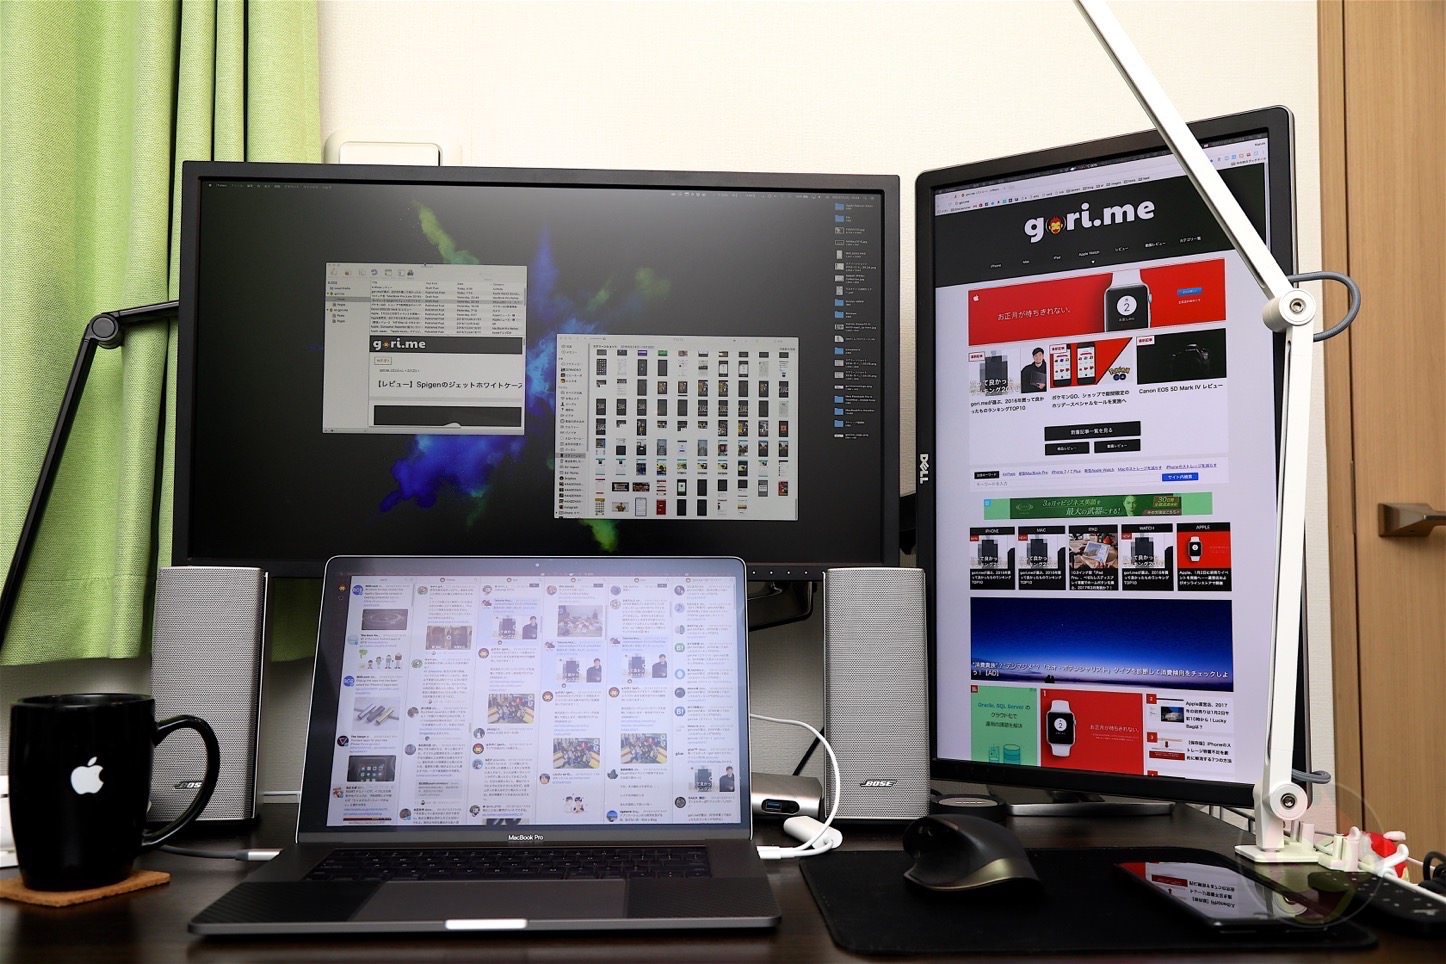 GoriMe-Workspace-Triple-Display.jpg